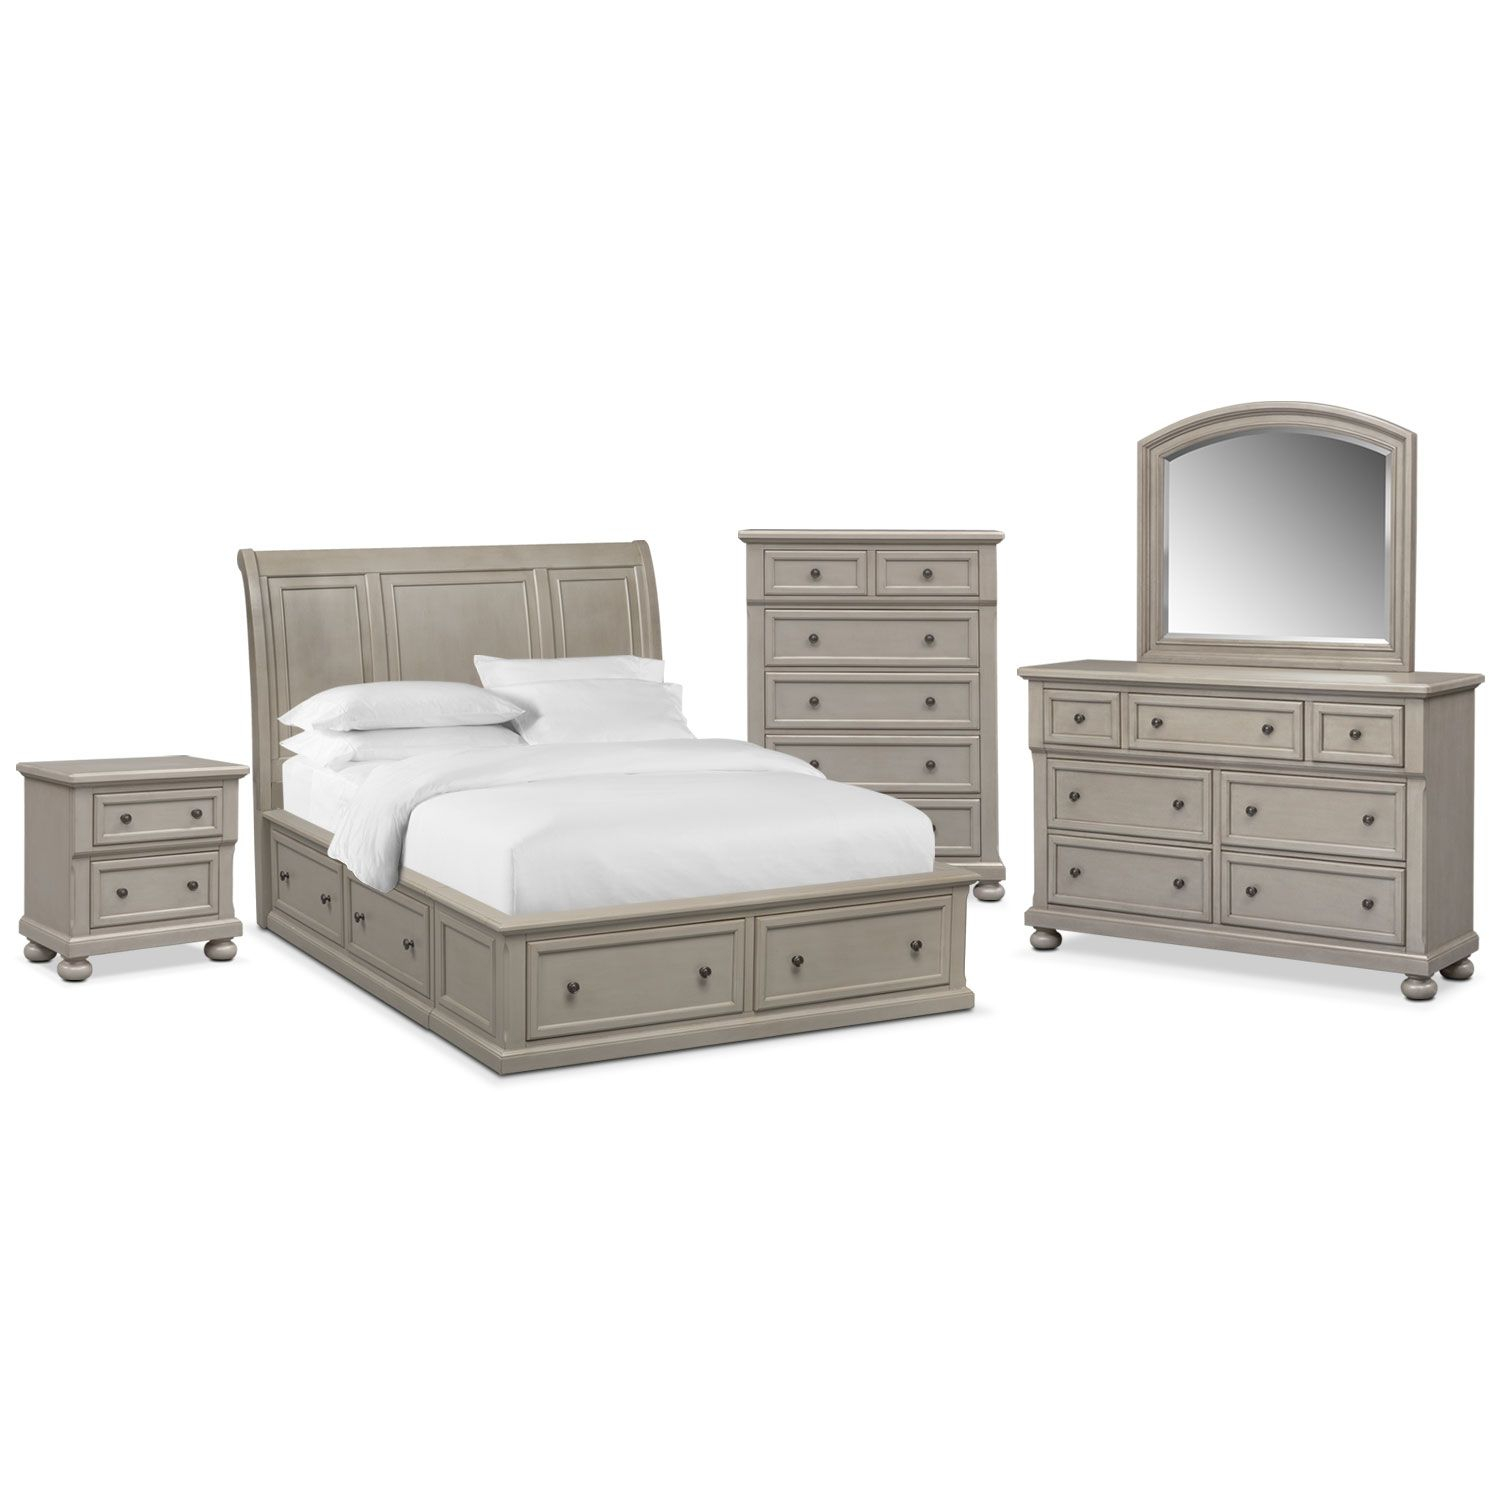 Hanover 7 Piece Storage Bedroom Set With Chest Nightstand Dresser regarding measurements 1500 X 1500